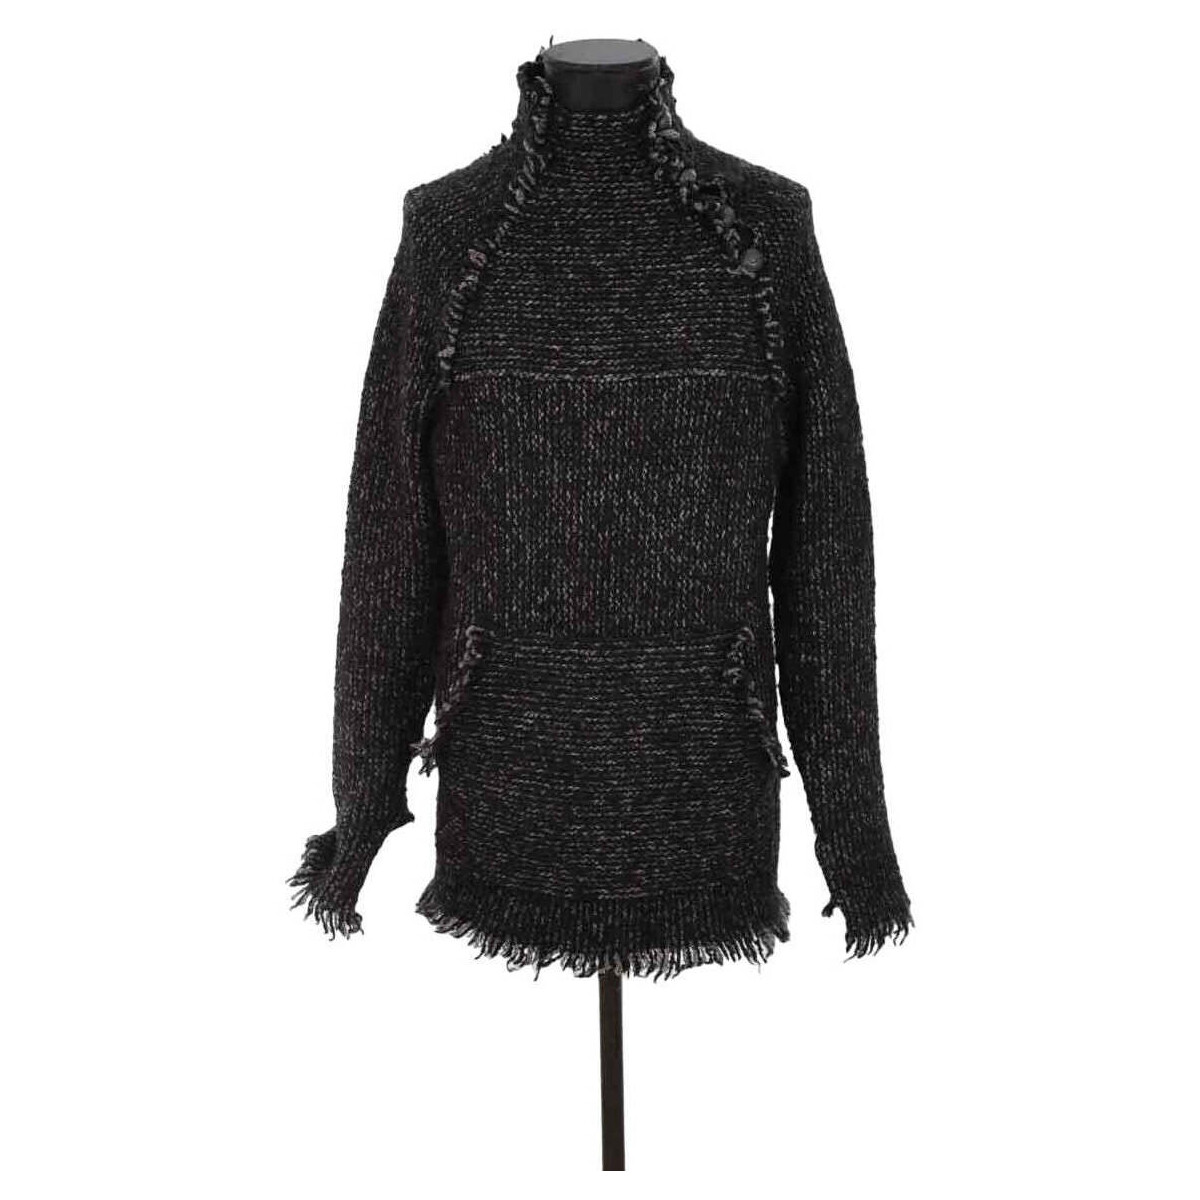 Vêtements Femme Sweats En vous inscrivant vous bénéficierez de tous nos bons plans en exclusivité Pull-over en laine Noir